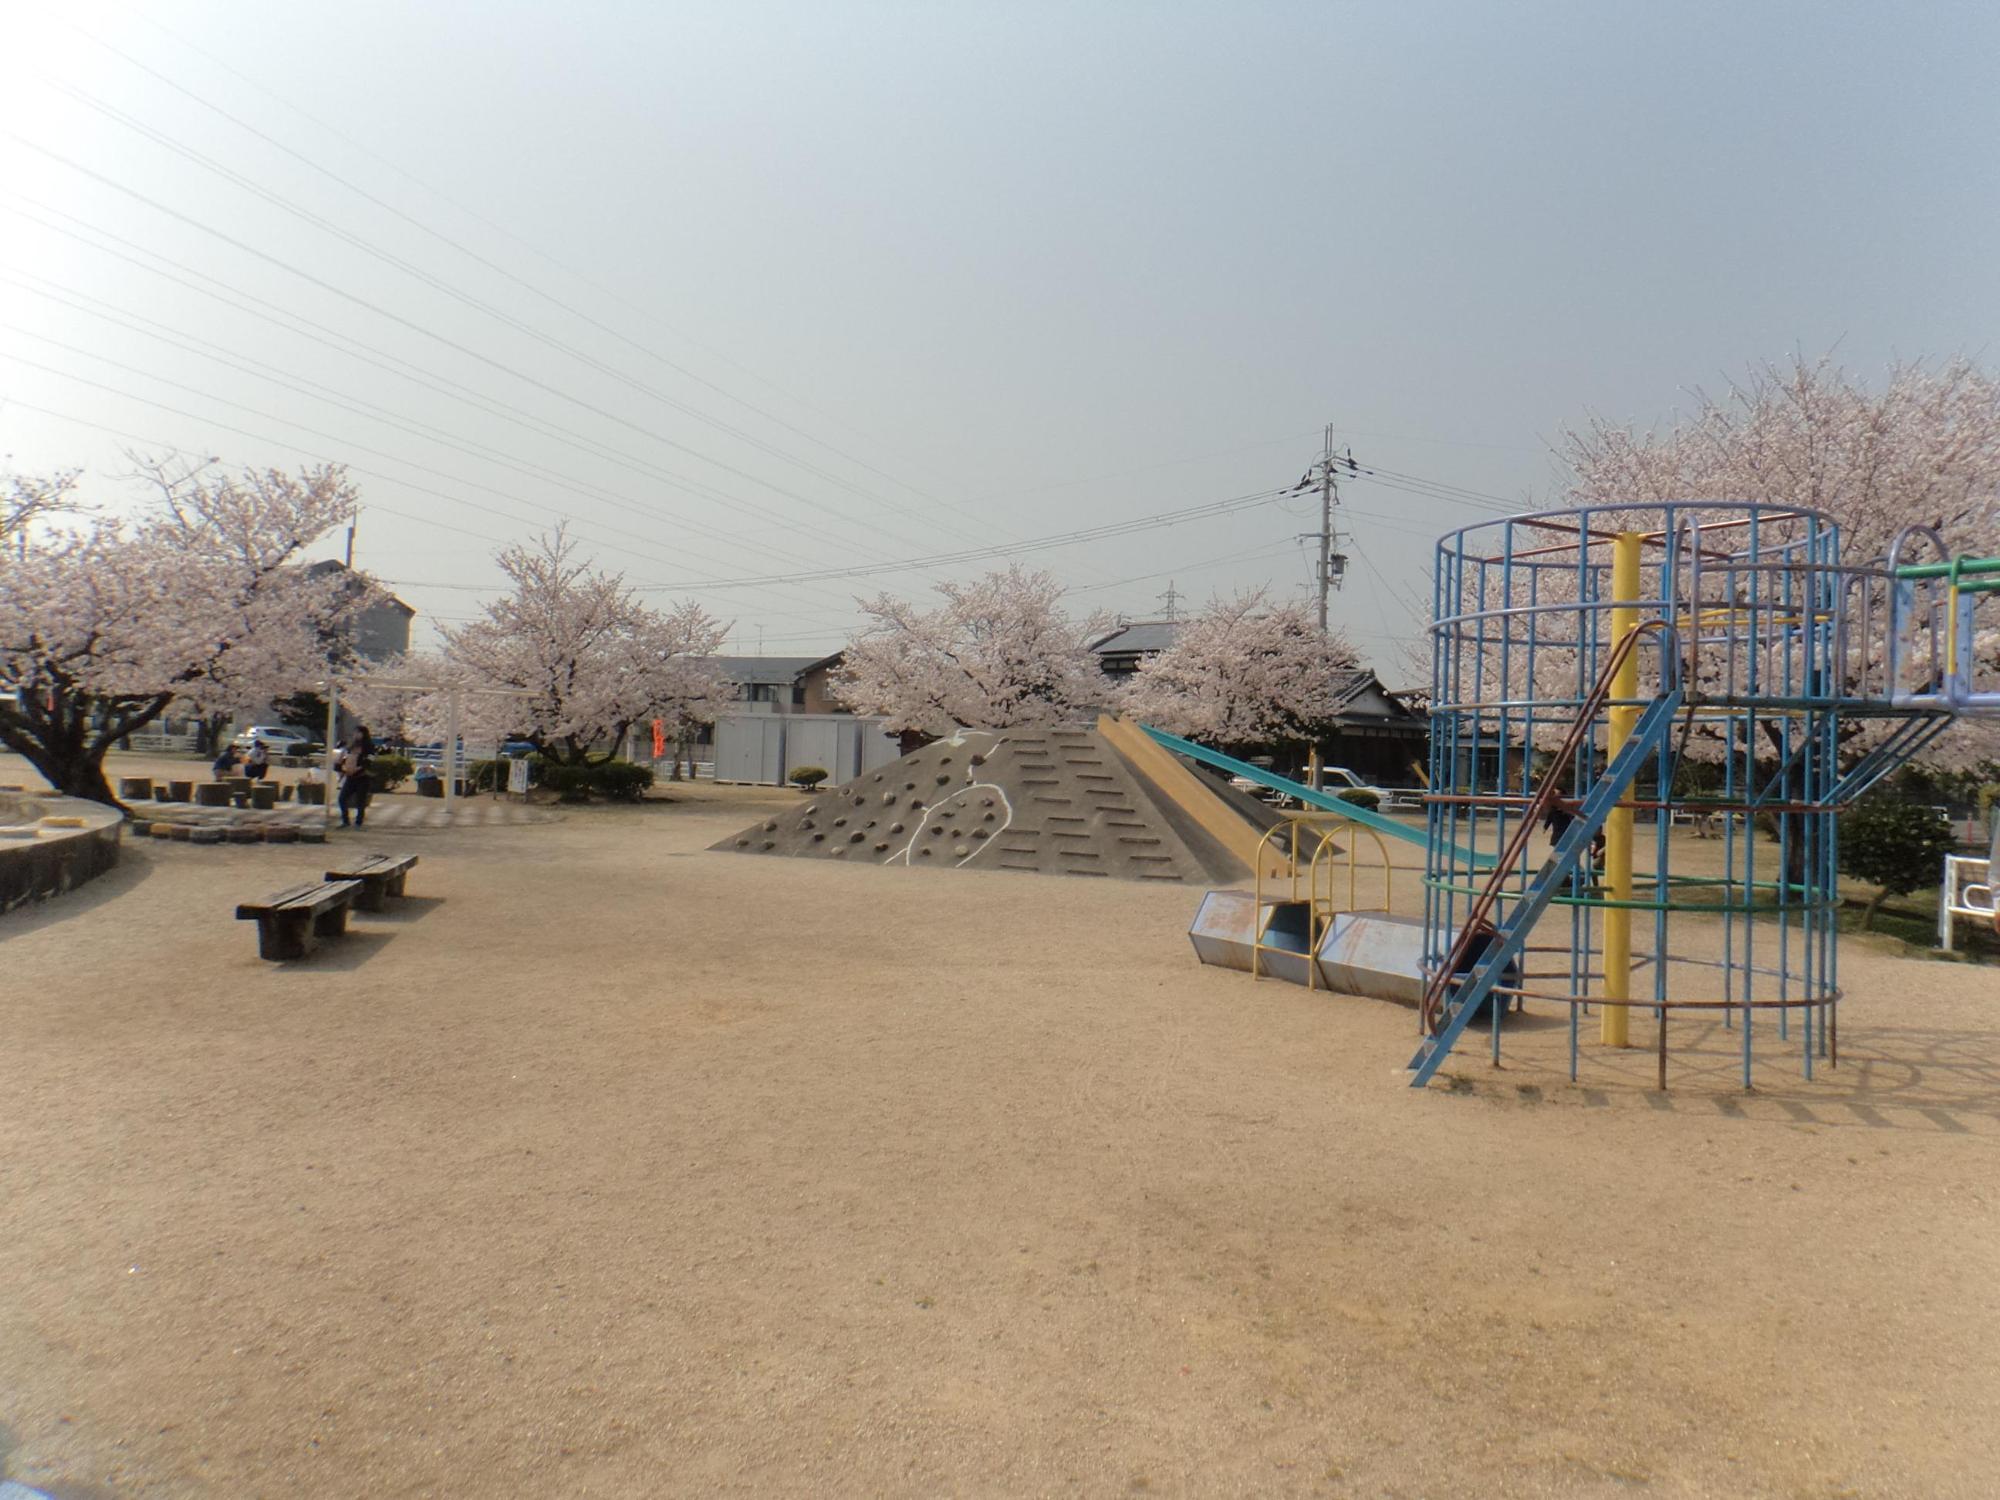 周りに満開の桜の木、円柱状のジャングルジムなどの遊具、ベンチが設置された中央第3児童公園の写真